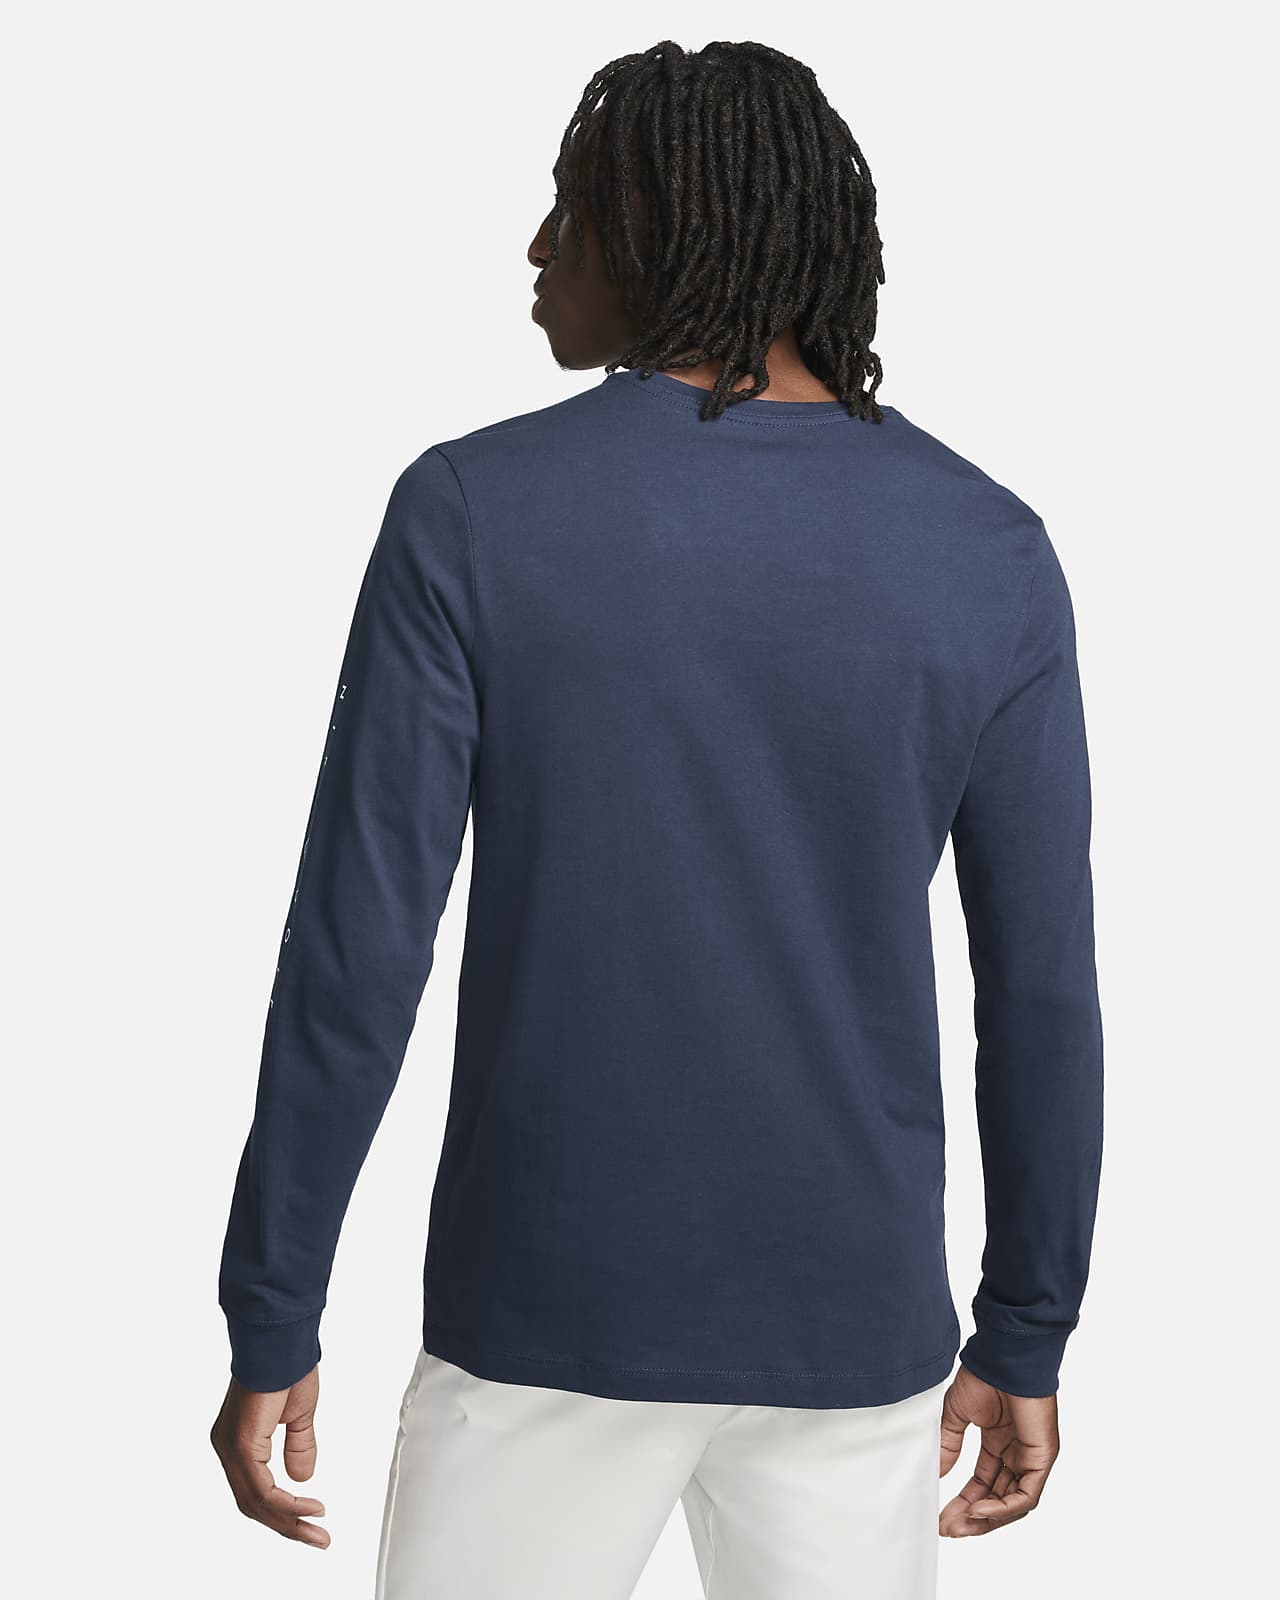 lid wees gegroet Opnemen Nike Men's Long-Sleeve Golf T-Shirt. Nike.com